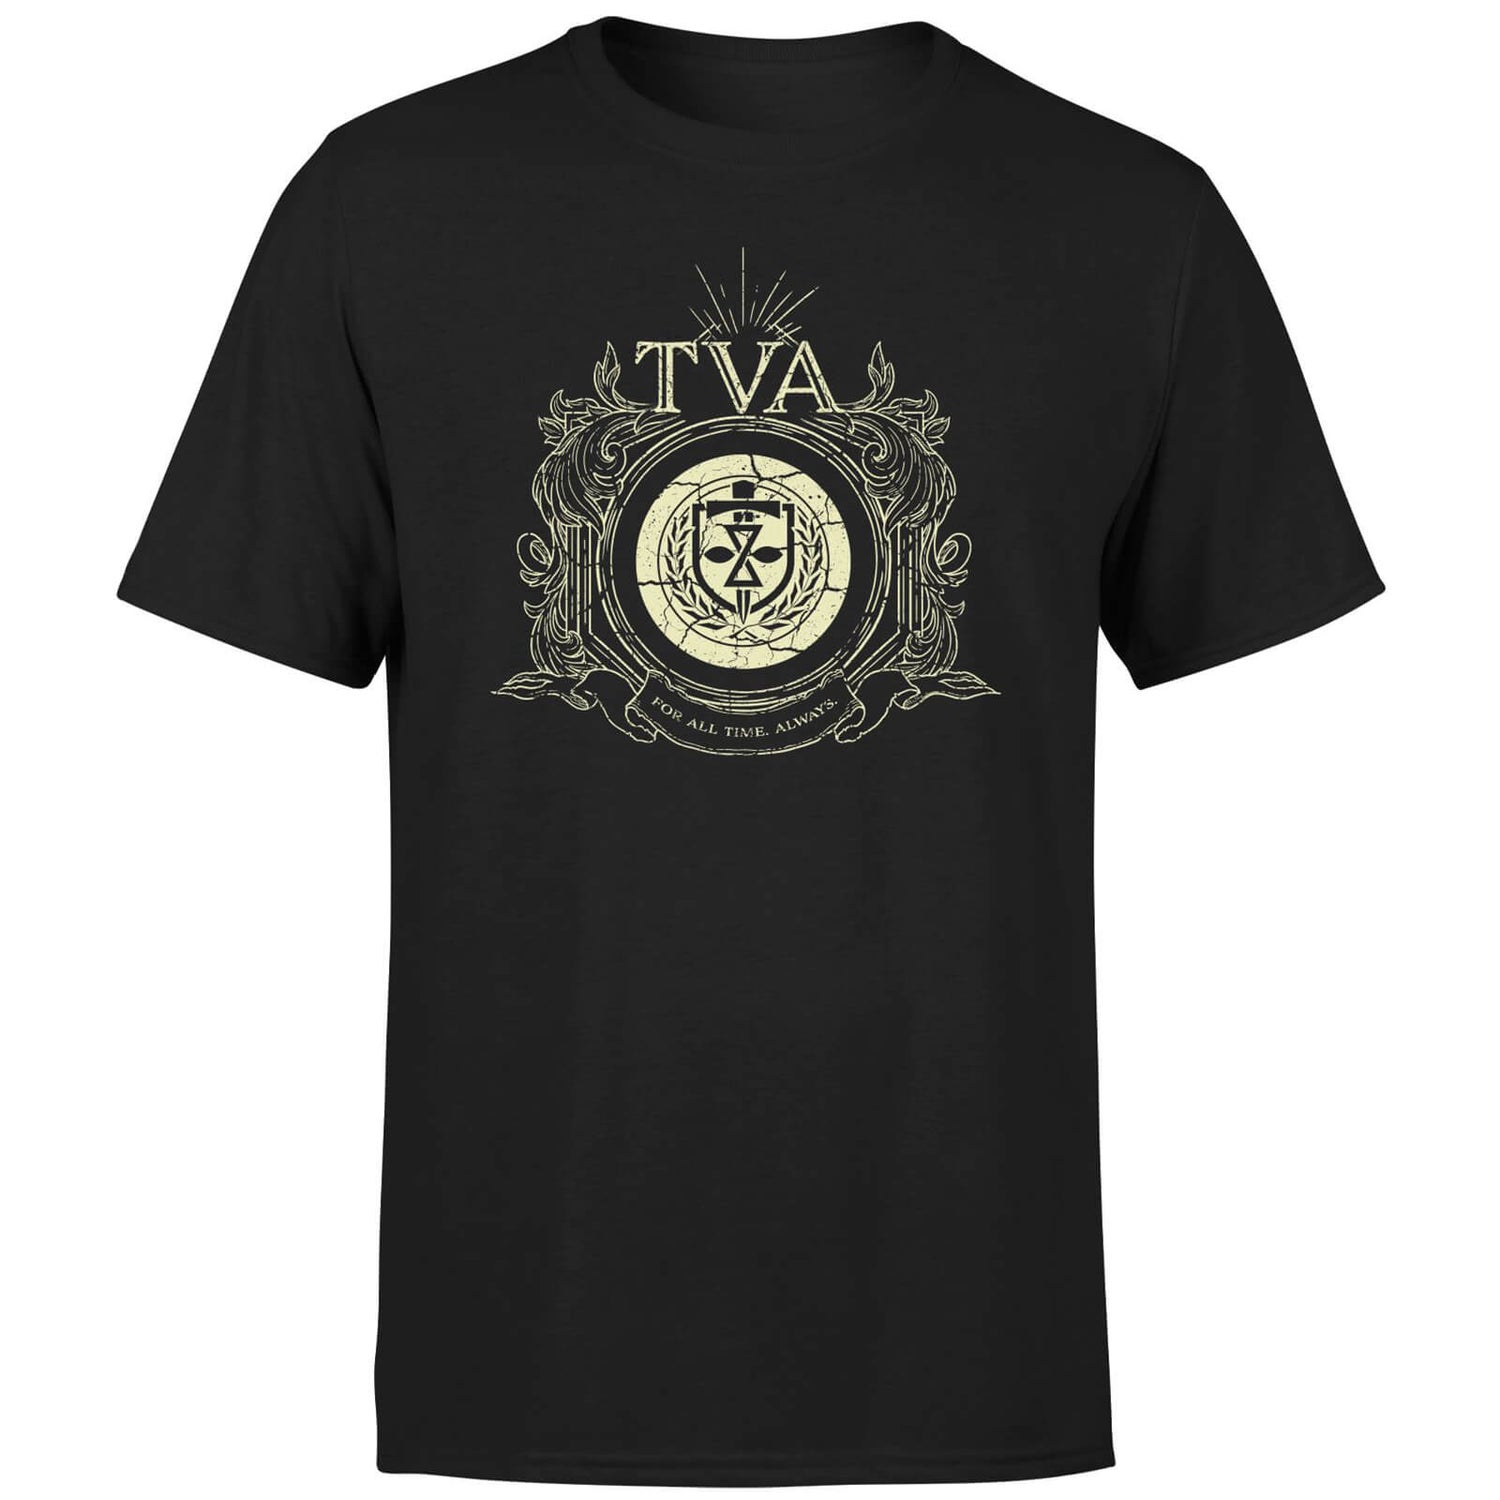 TVA Crest Men's T-Shirt - Black